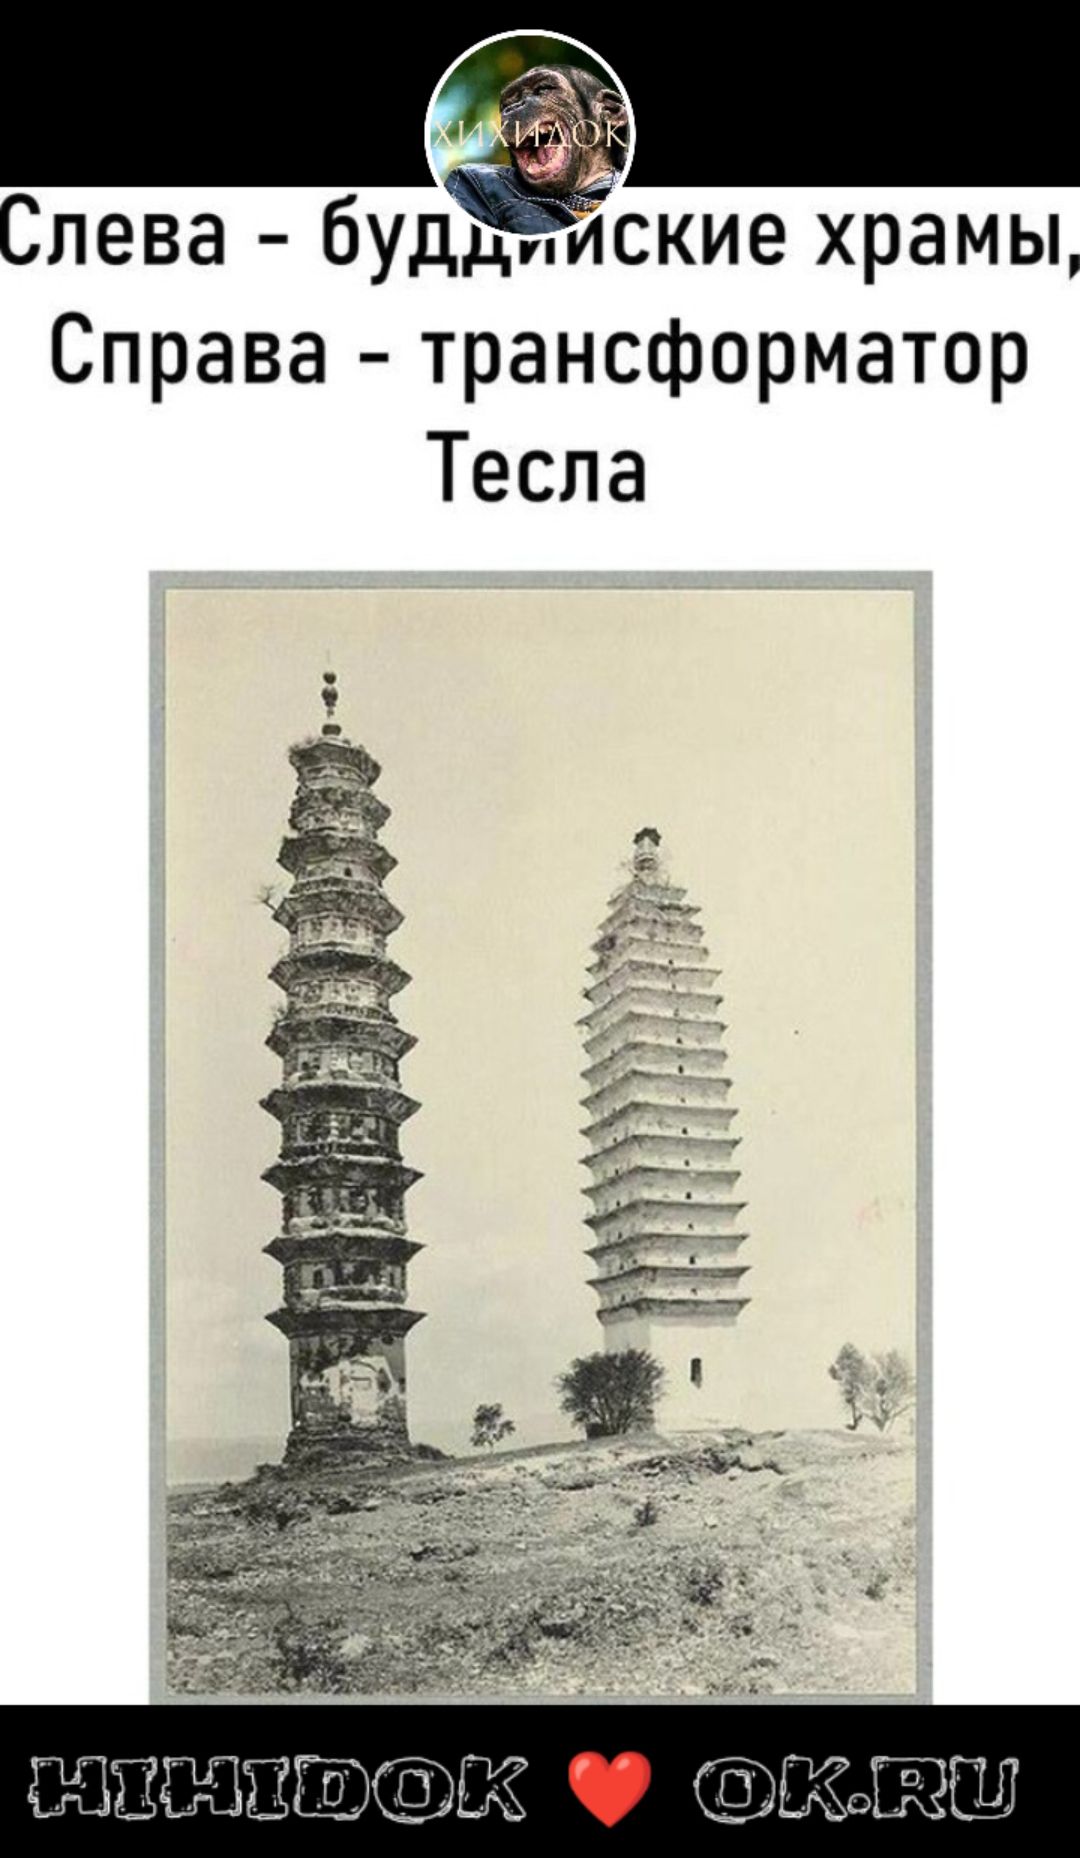 Слева будёские храмы Справа трансформатор Тесла